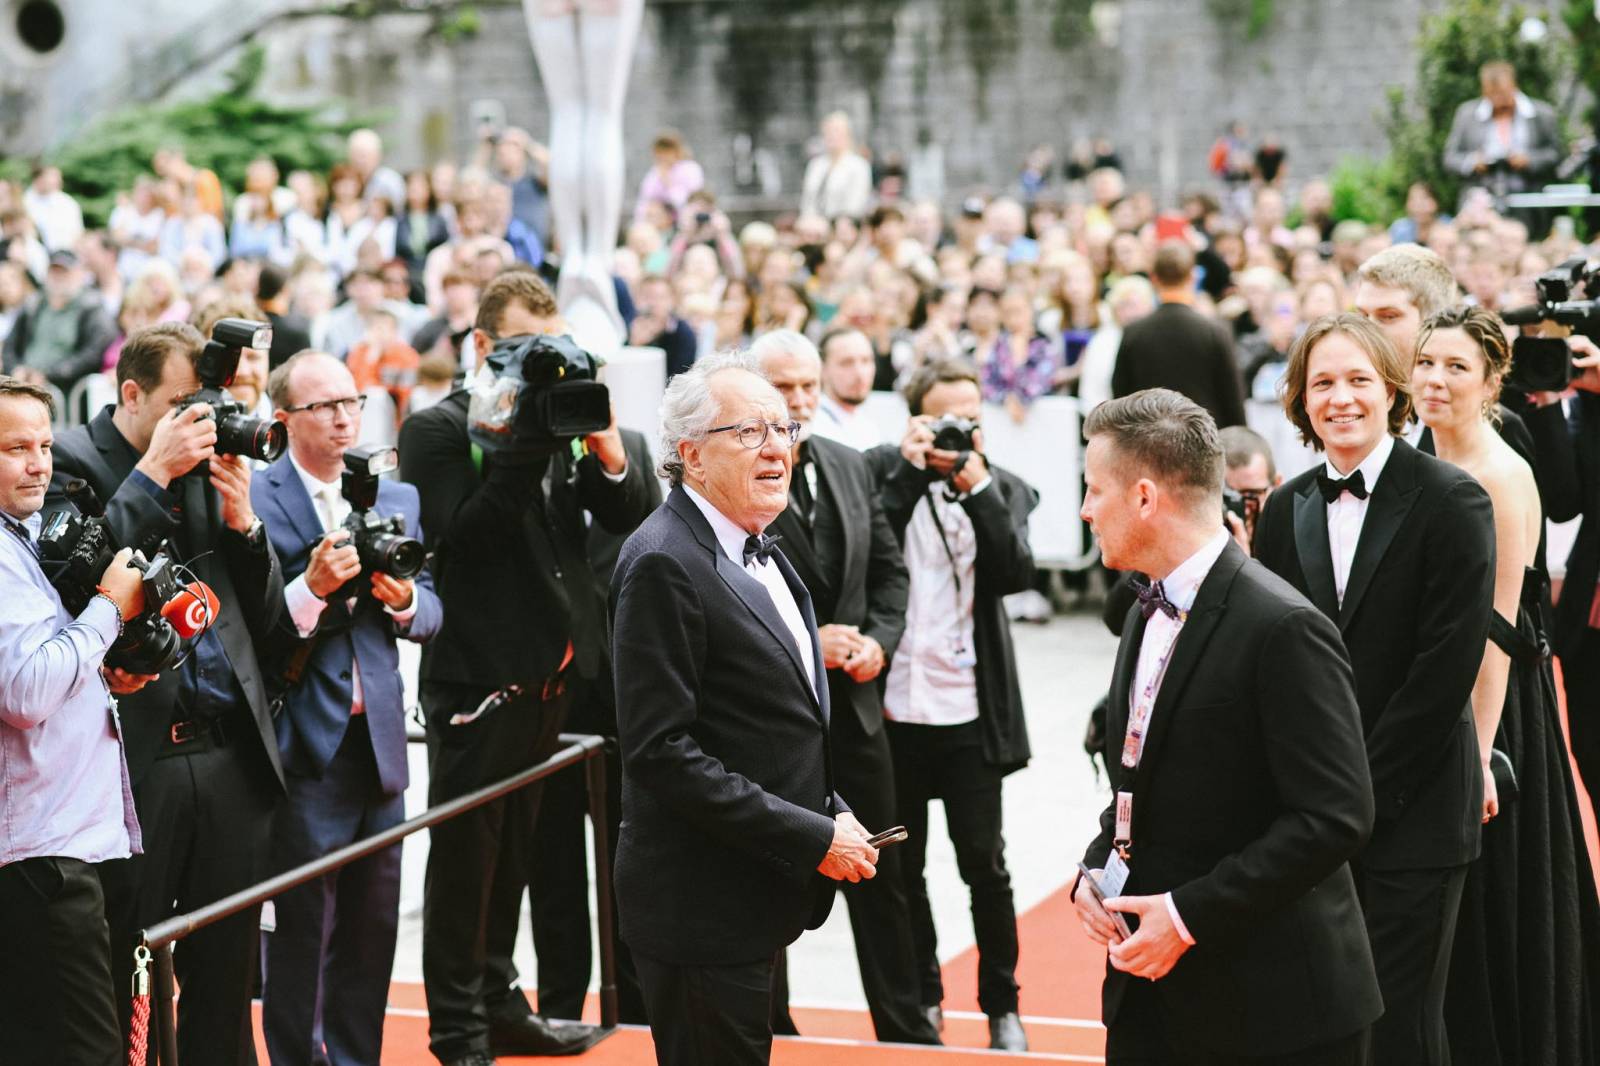 MFF Karlovy Vary vyvrcholil závěrečným ceremoniálem, následovala show Monkey Business s Jakubem Prachařem i Adamem Mišíkem